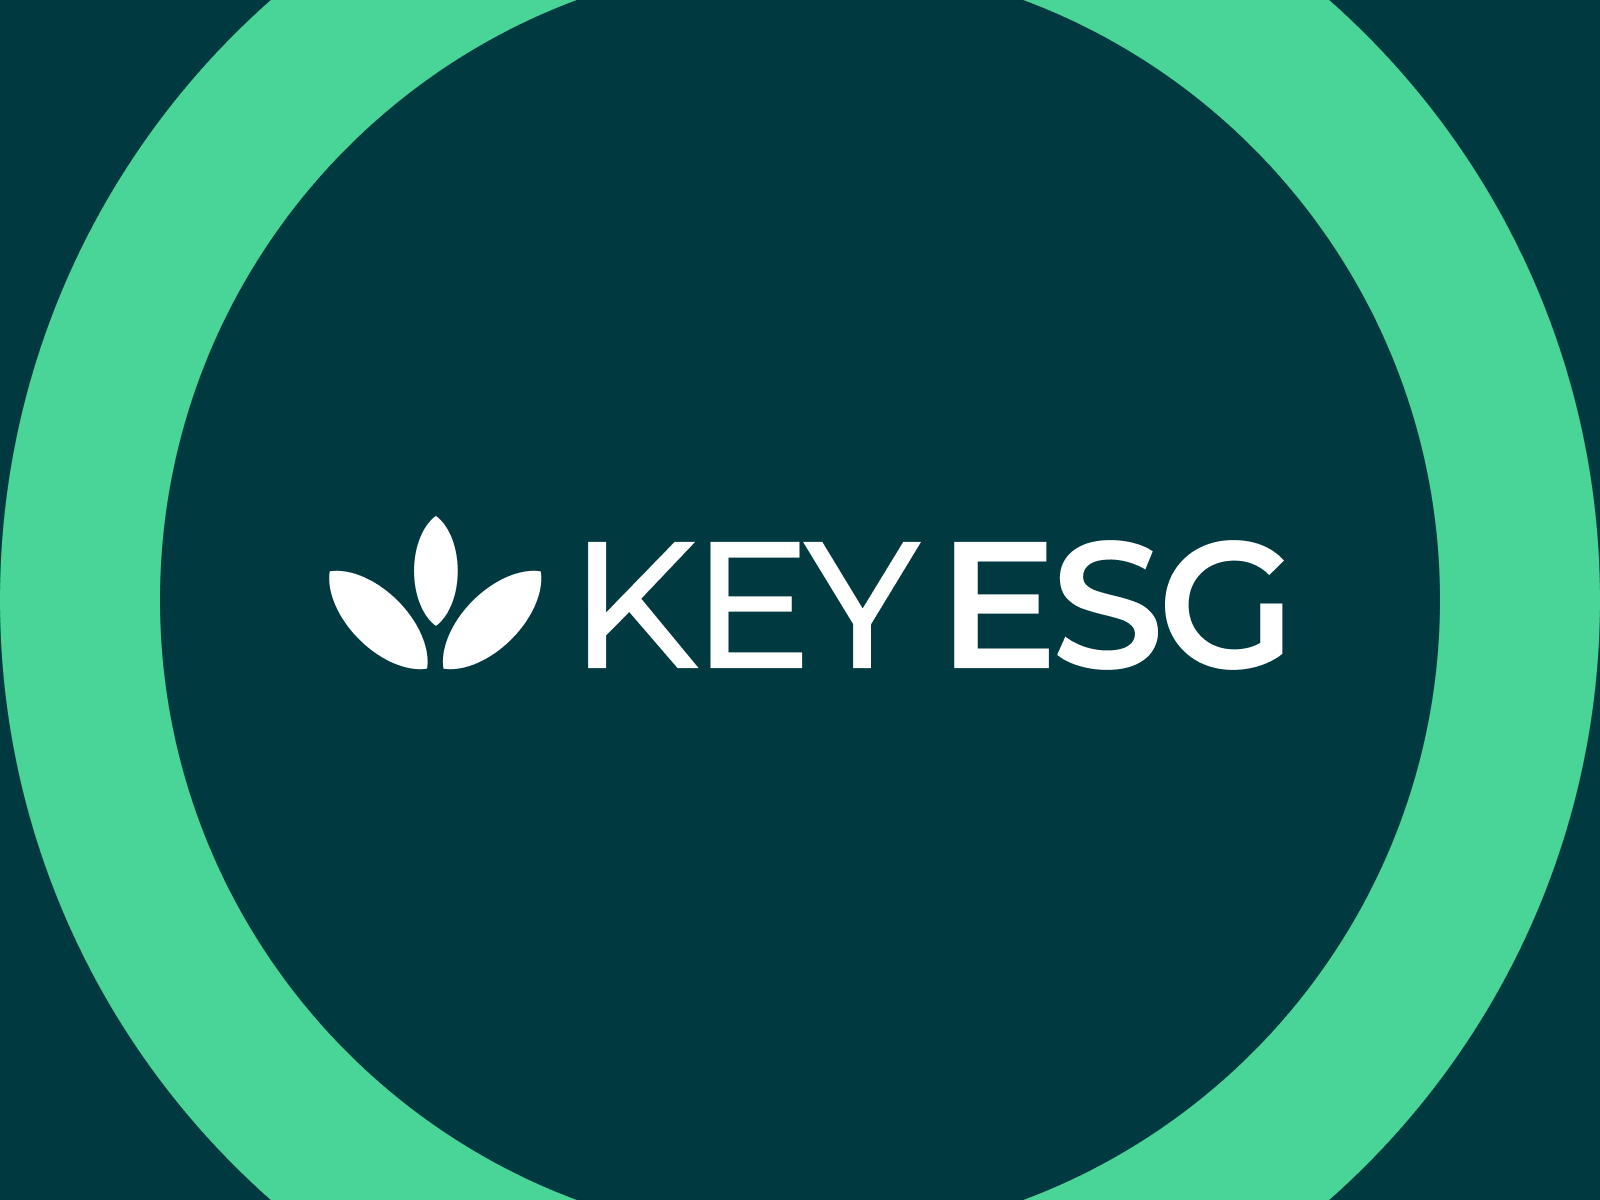 Key ESG